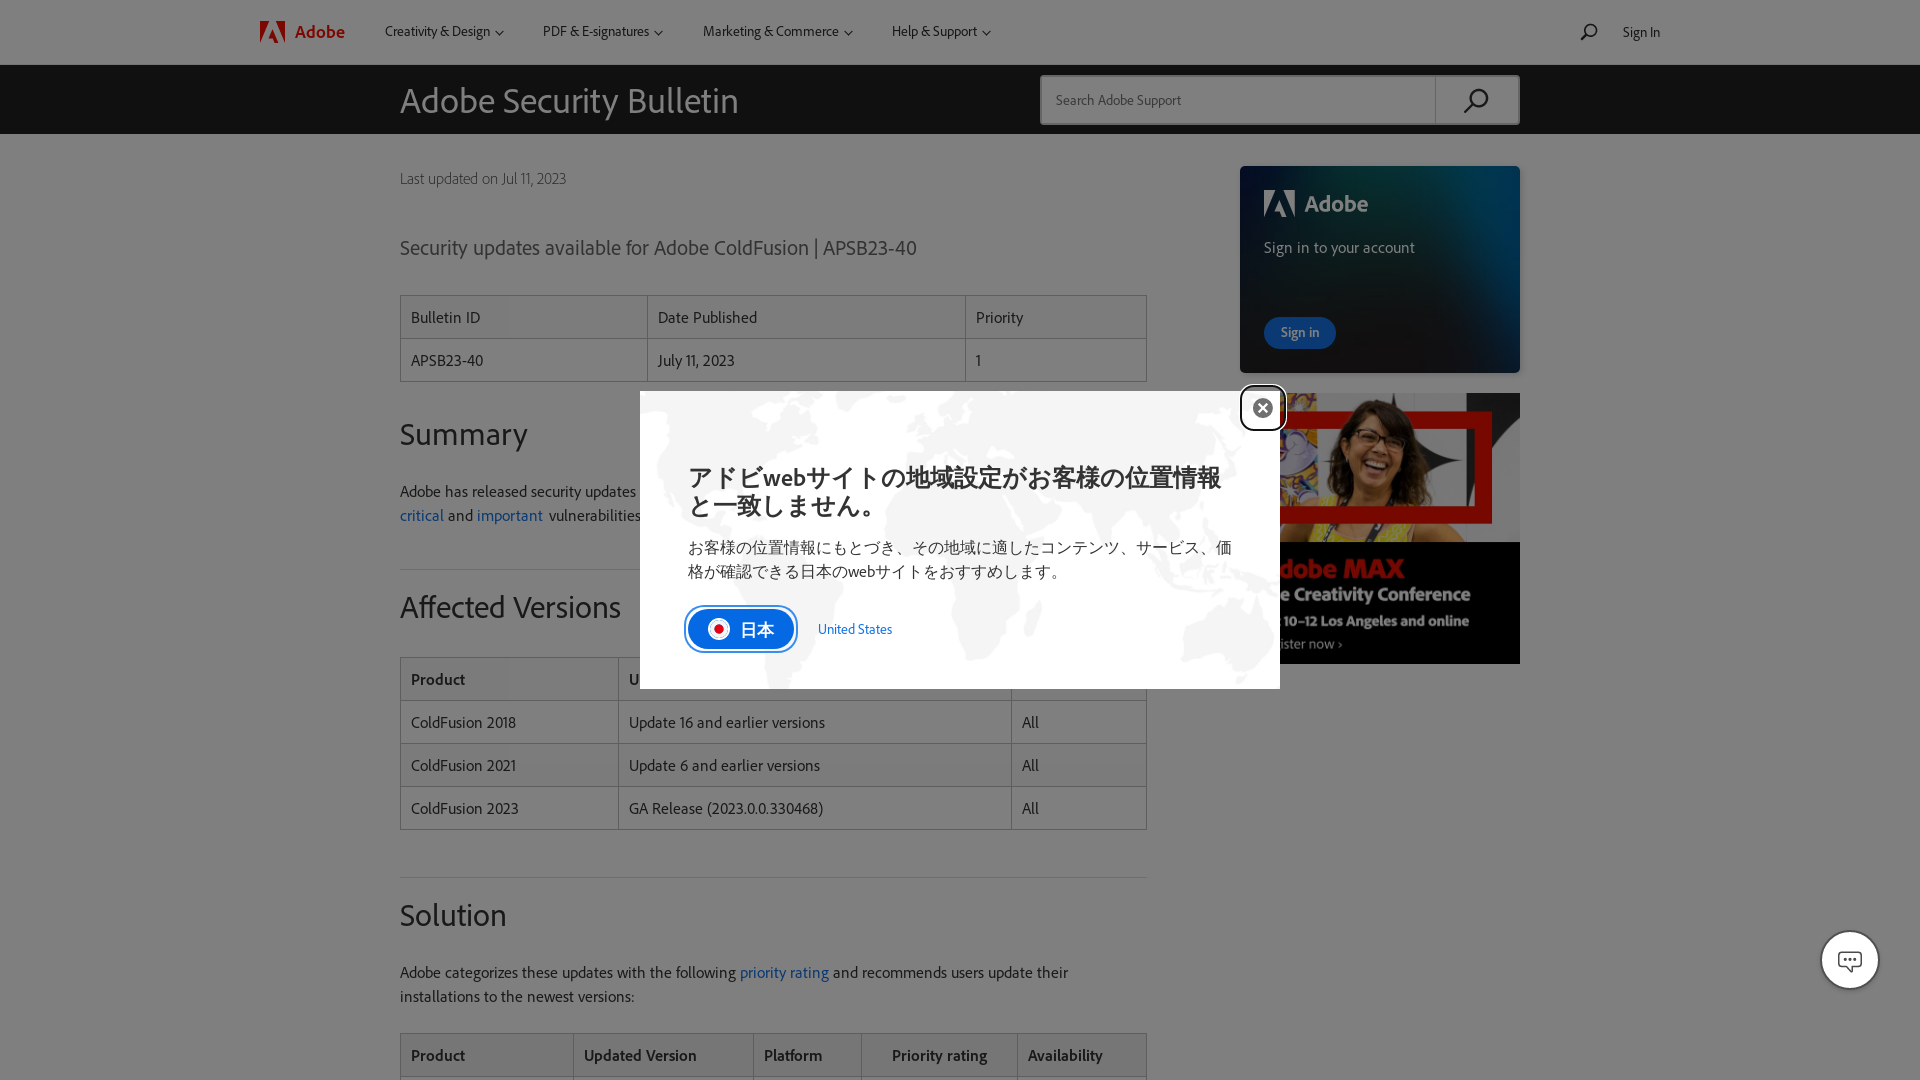 Adobe Security Bulletin